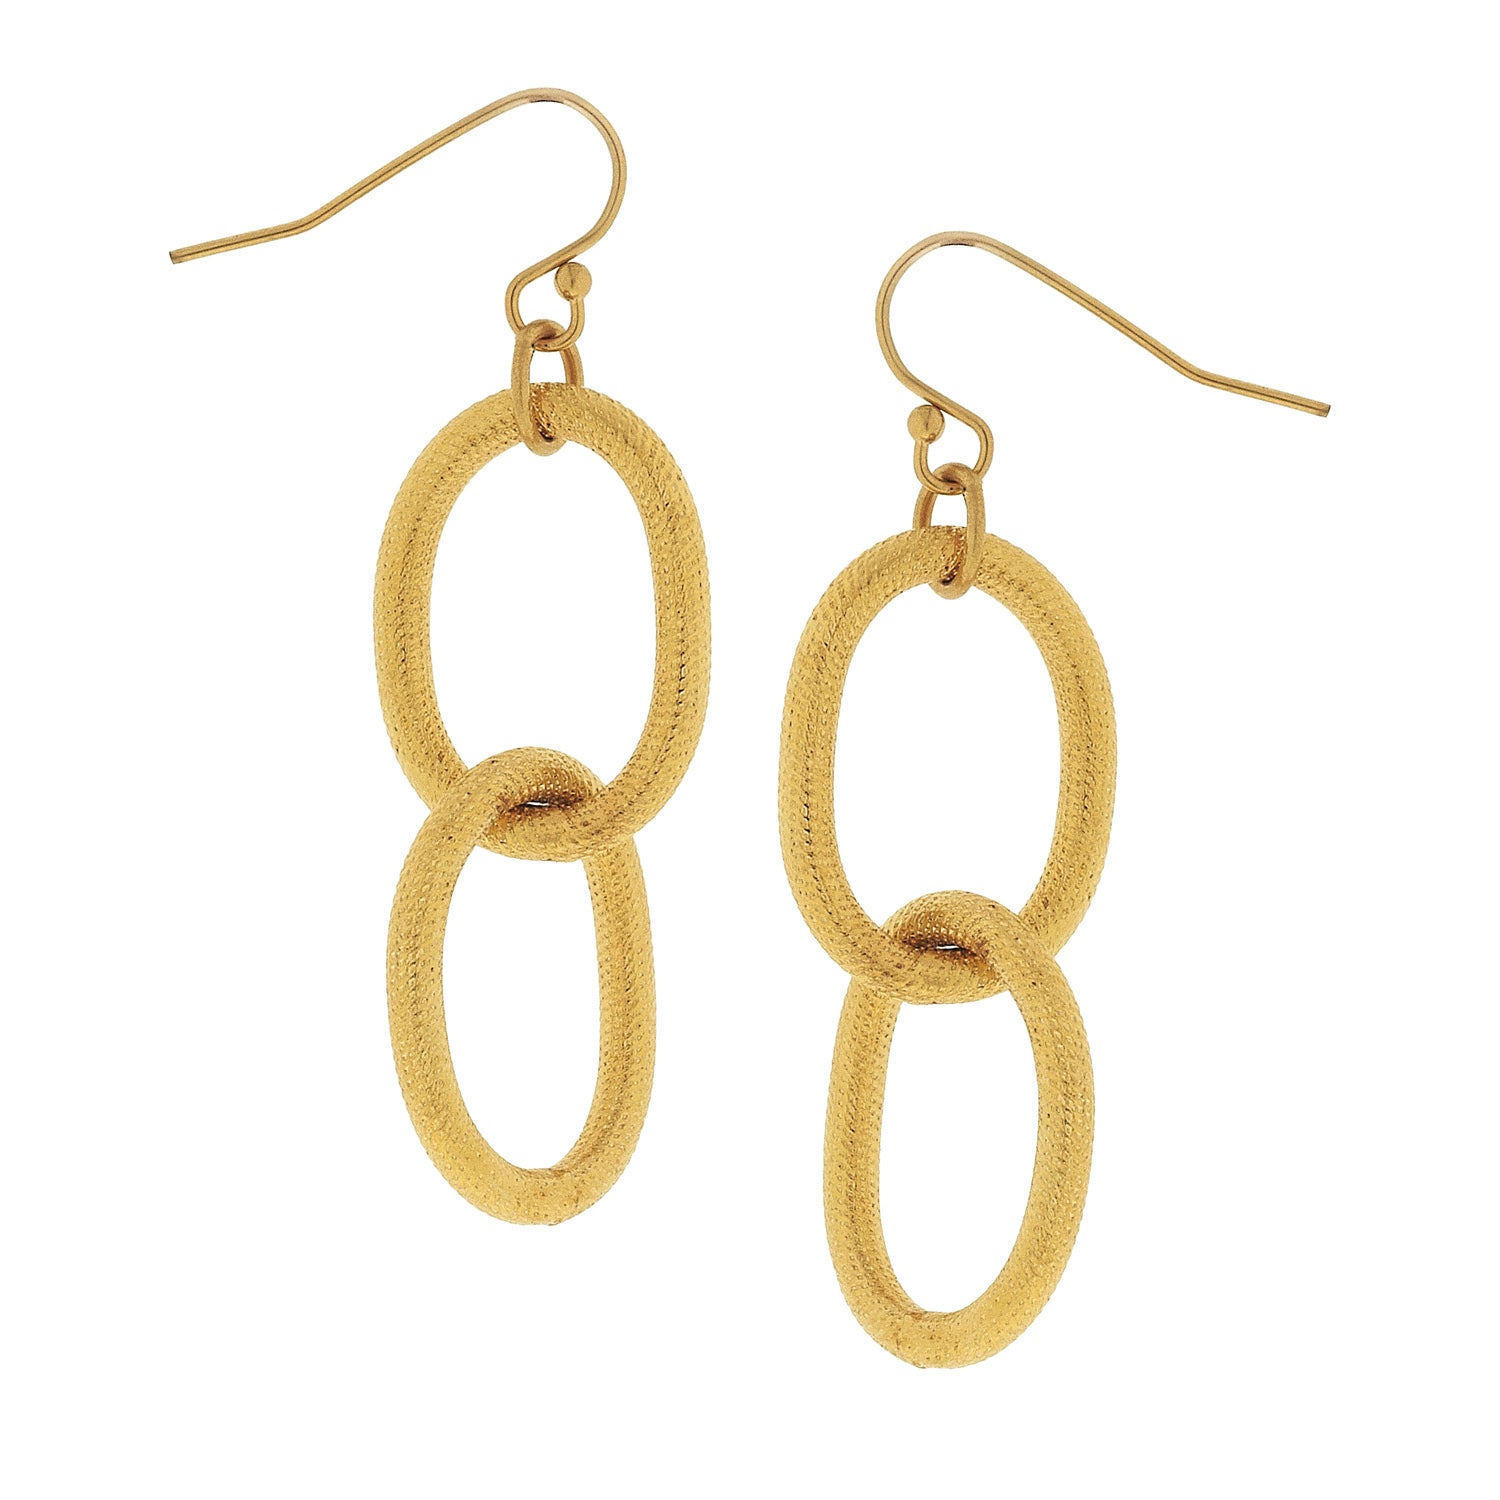 Susan Shaw Gold Chain Dangle Earrings